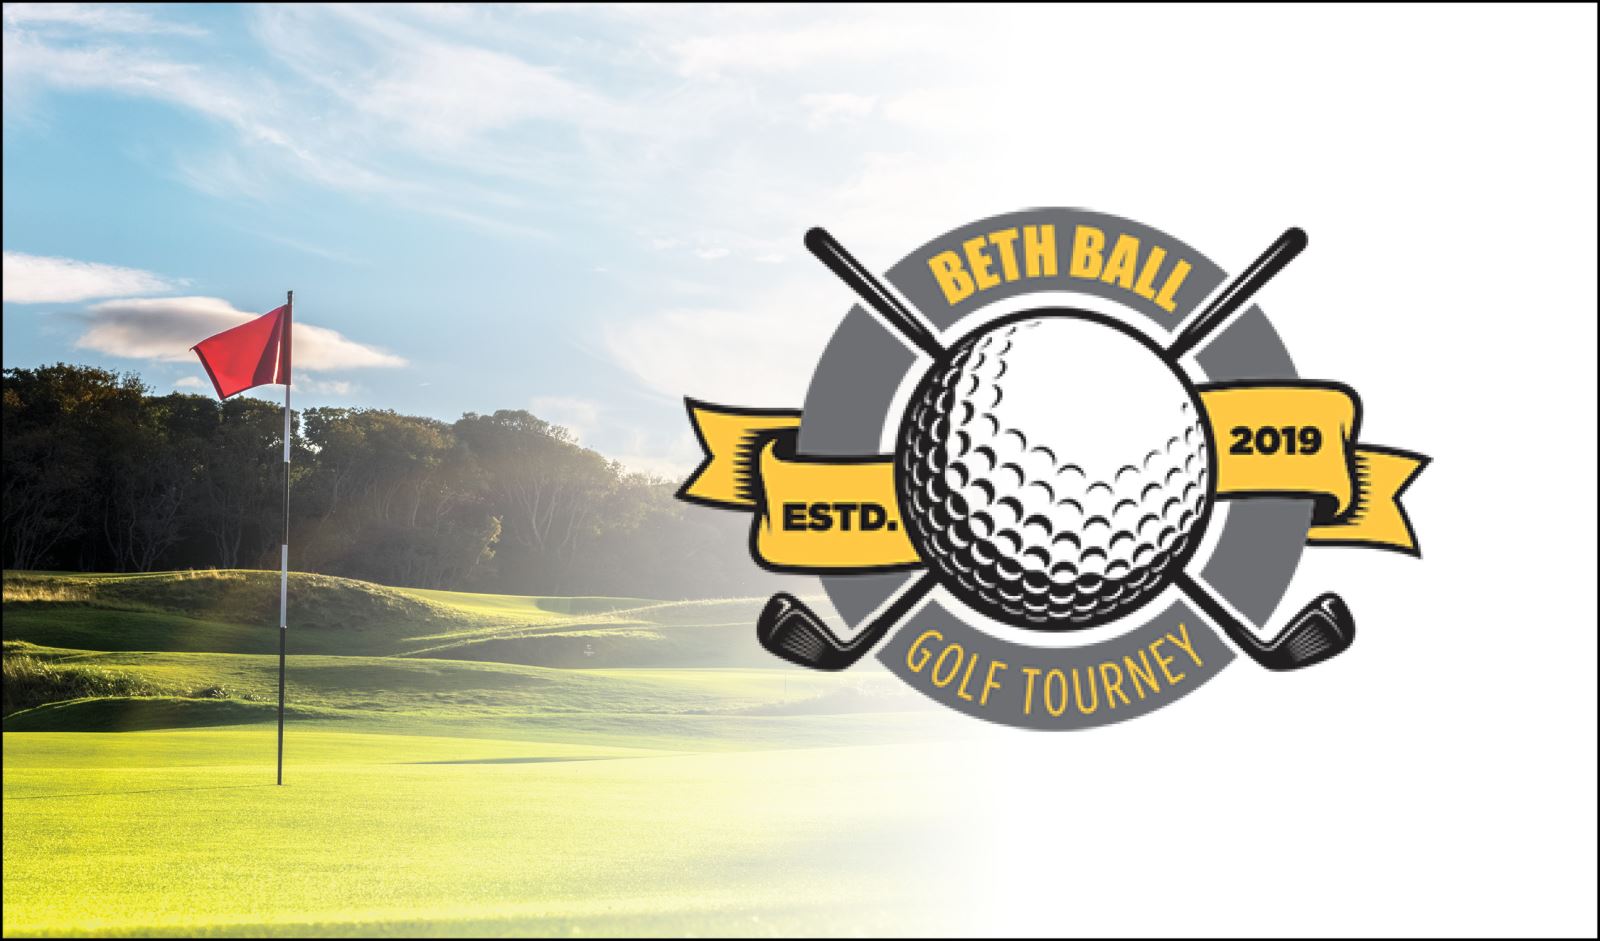 Annual Beth Ball Golf Tourney | Arnolds Park, IA